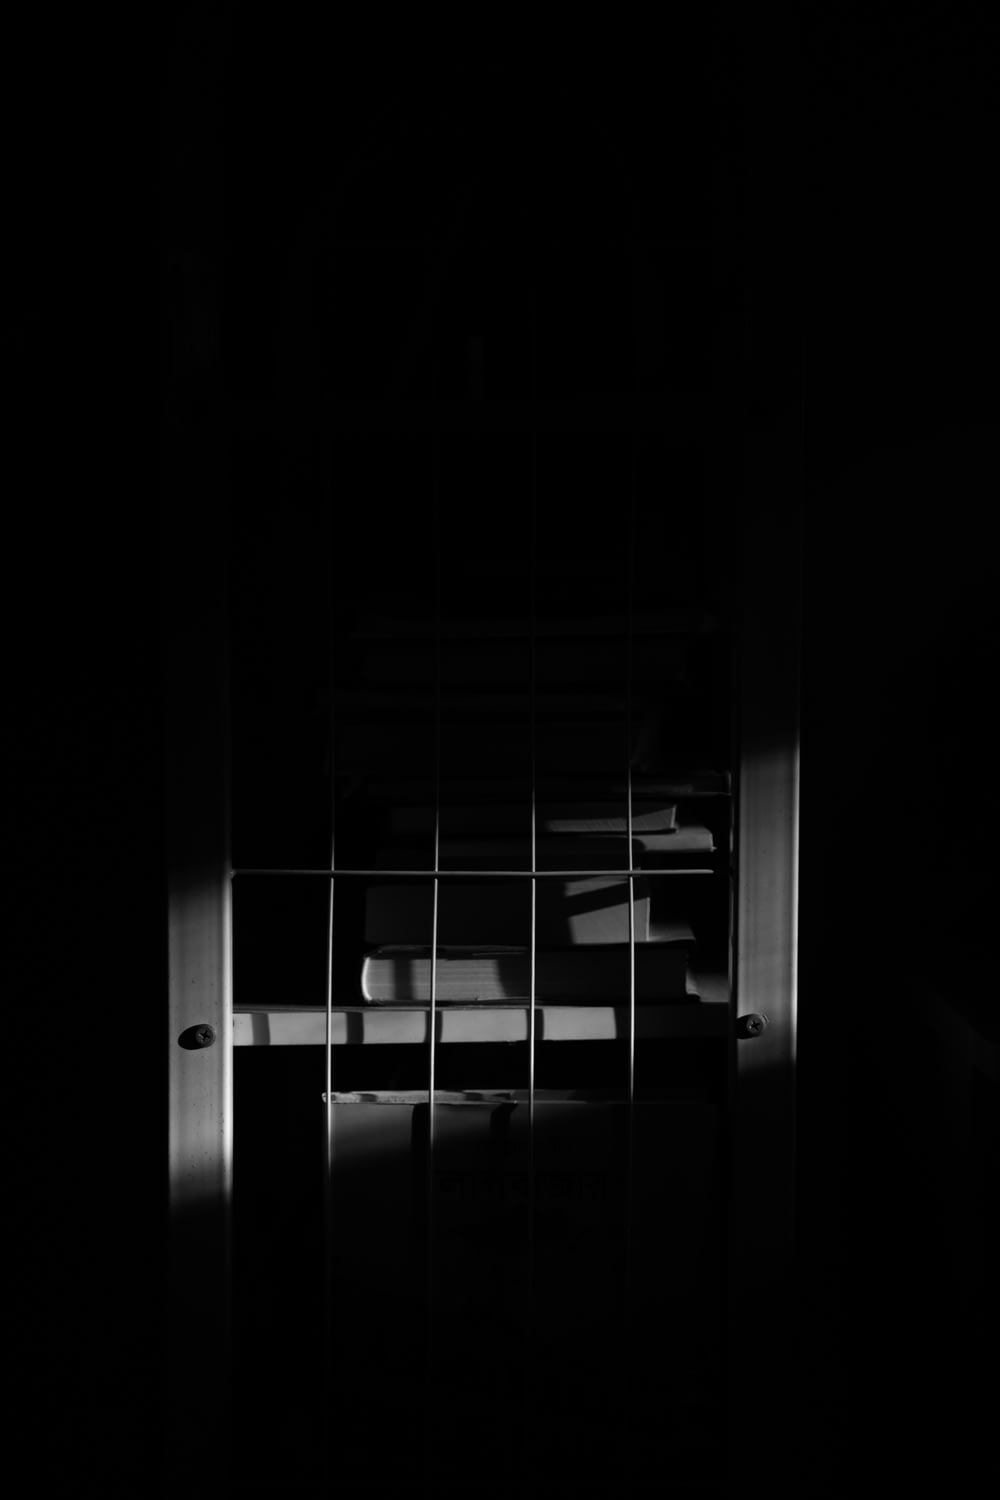 Una foto en blanco y negro de una ventana en una habitación oscura